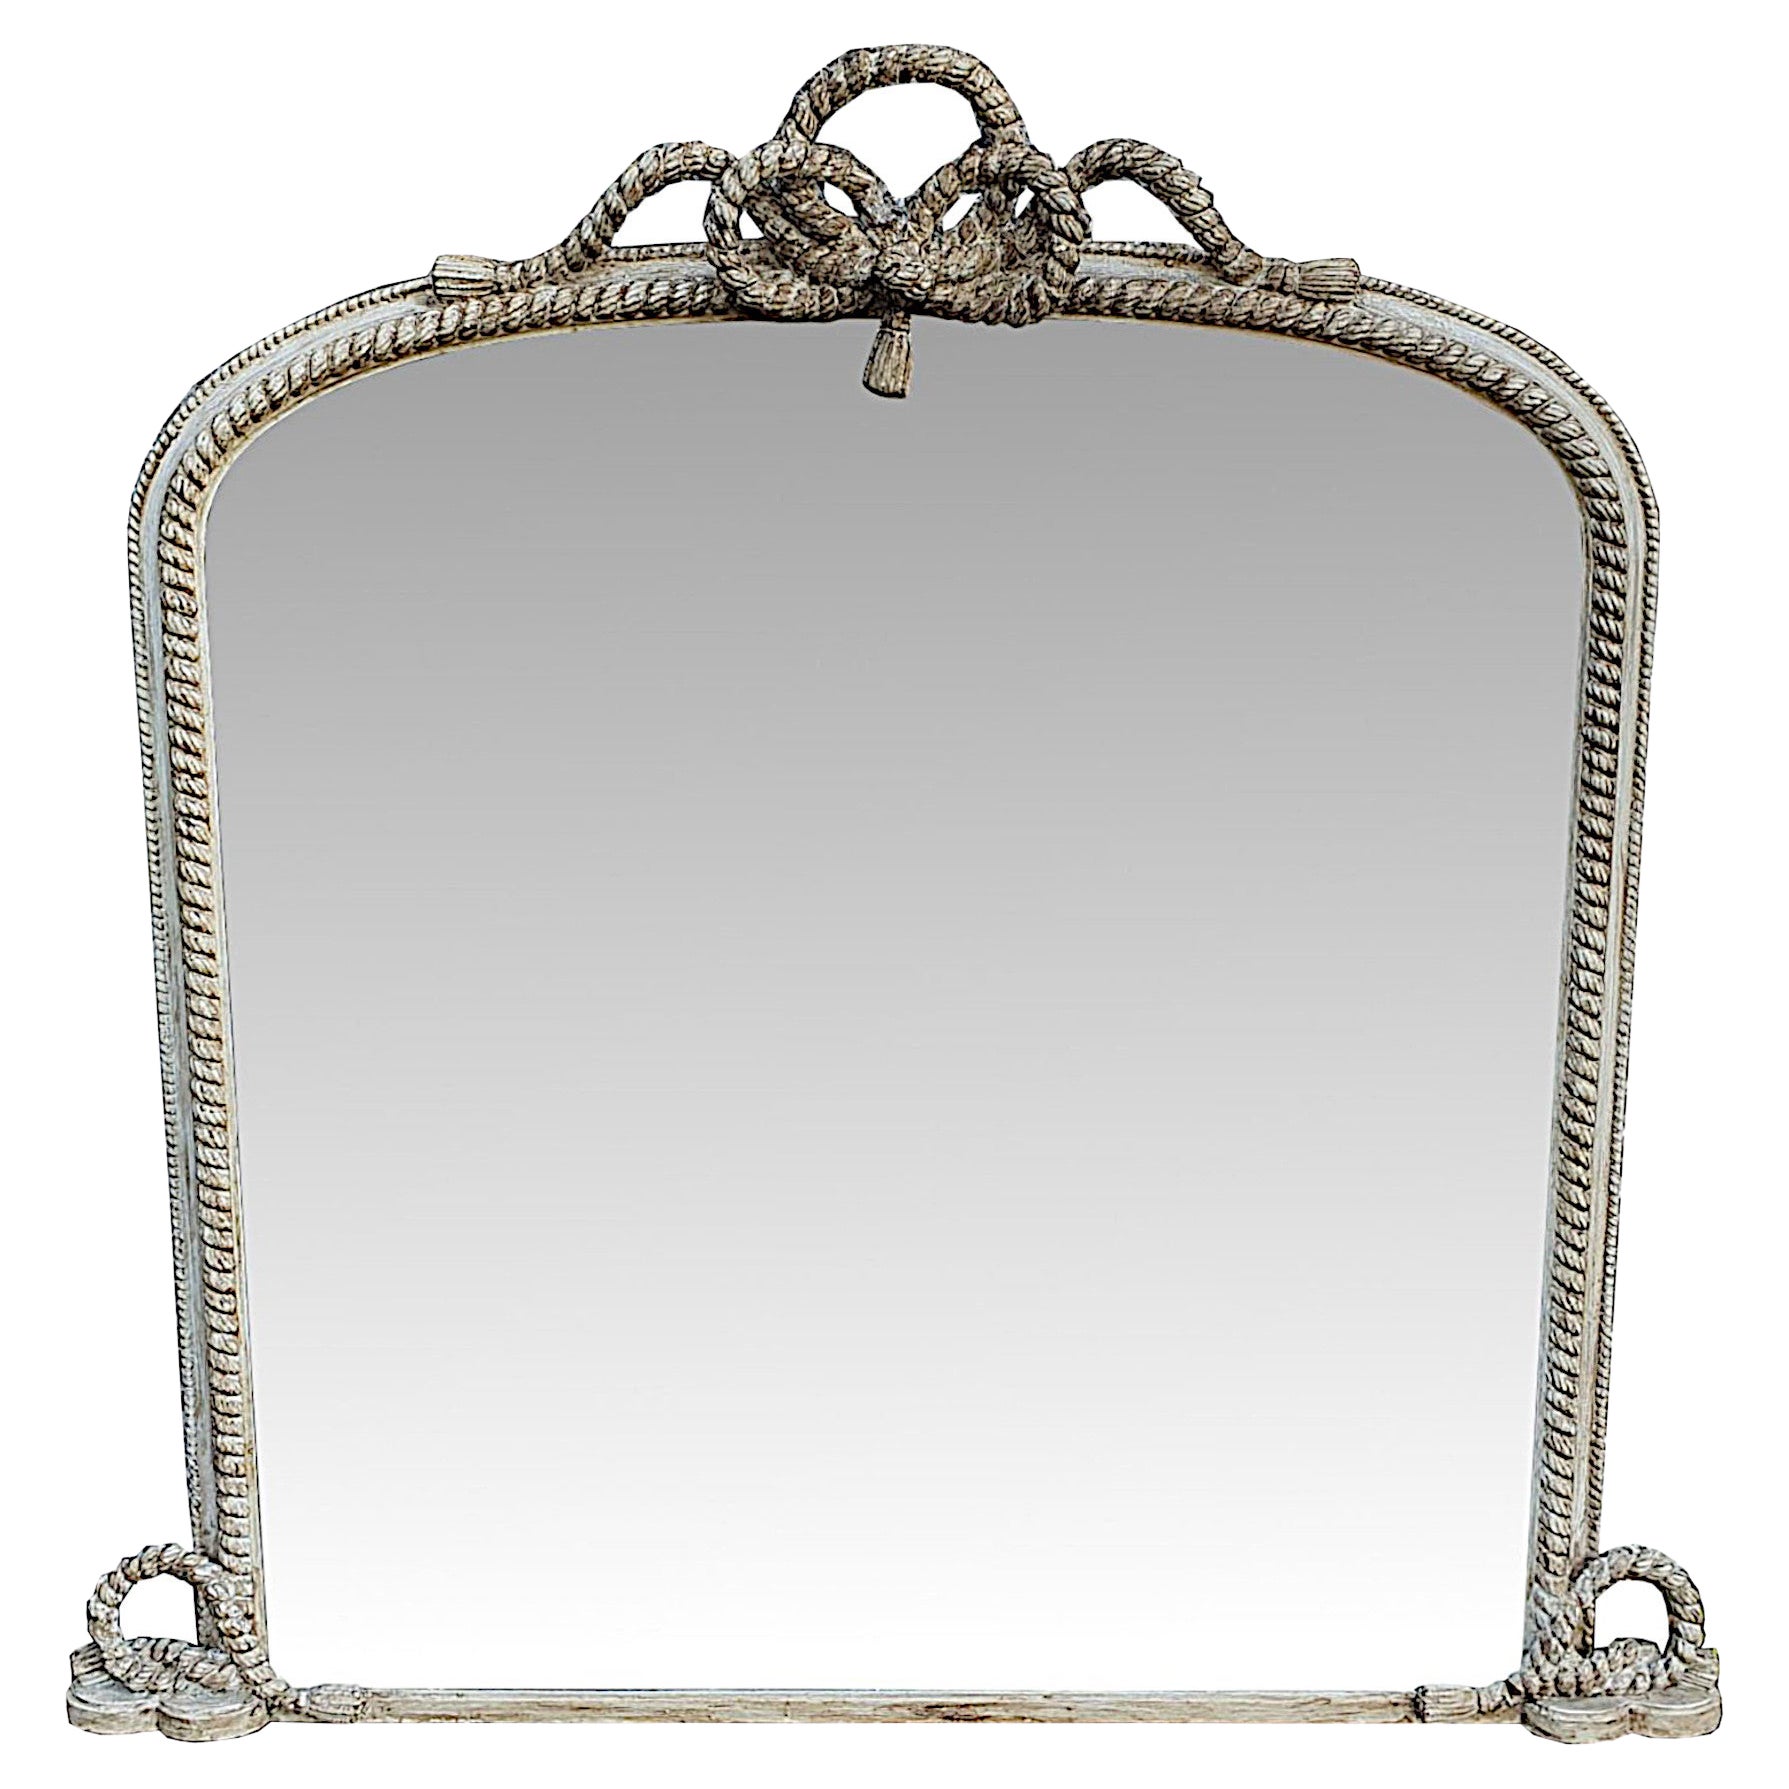 Wunderschöner Overmantle-Spiegel aus dem 19. Jahrhundert, restauriert in einer gealterten Lackierung